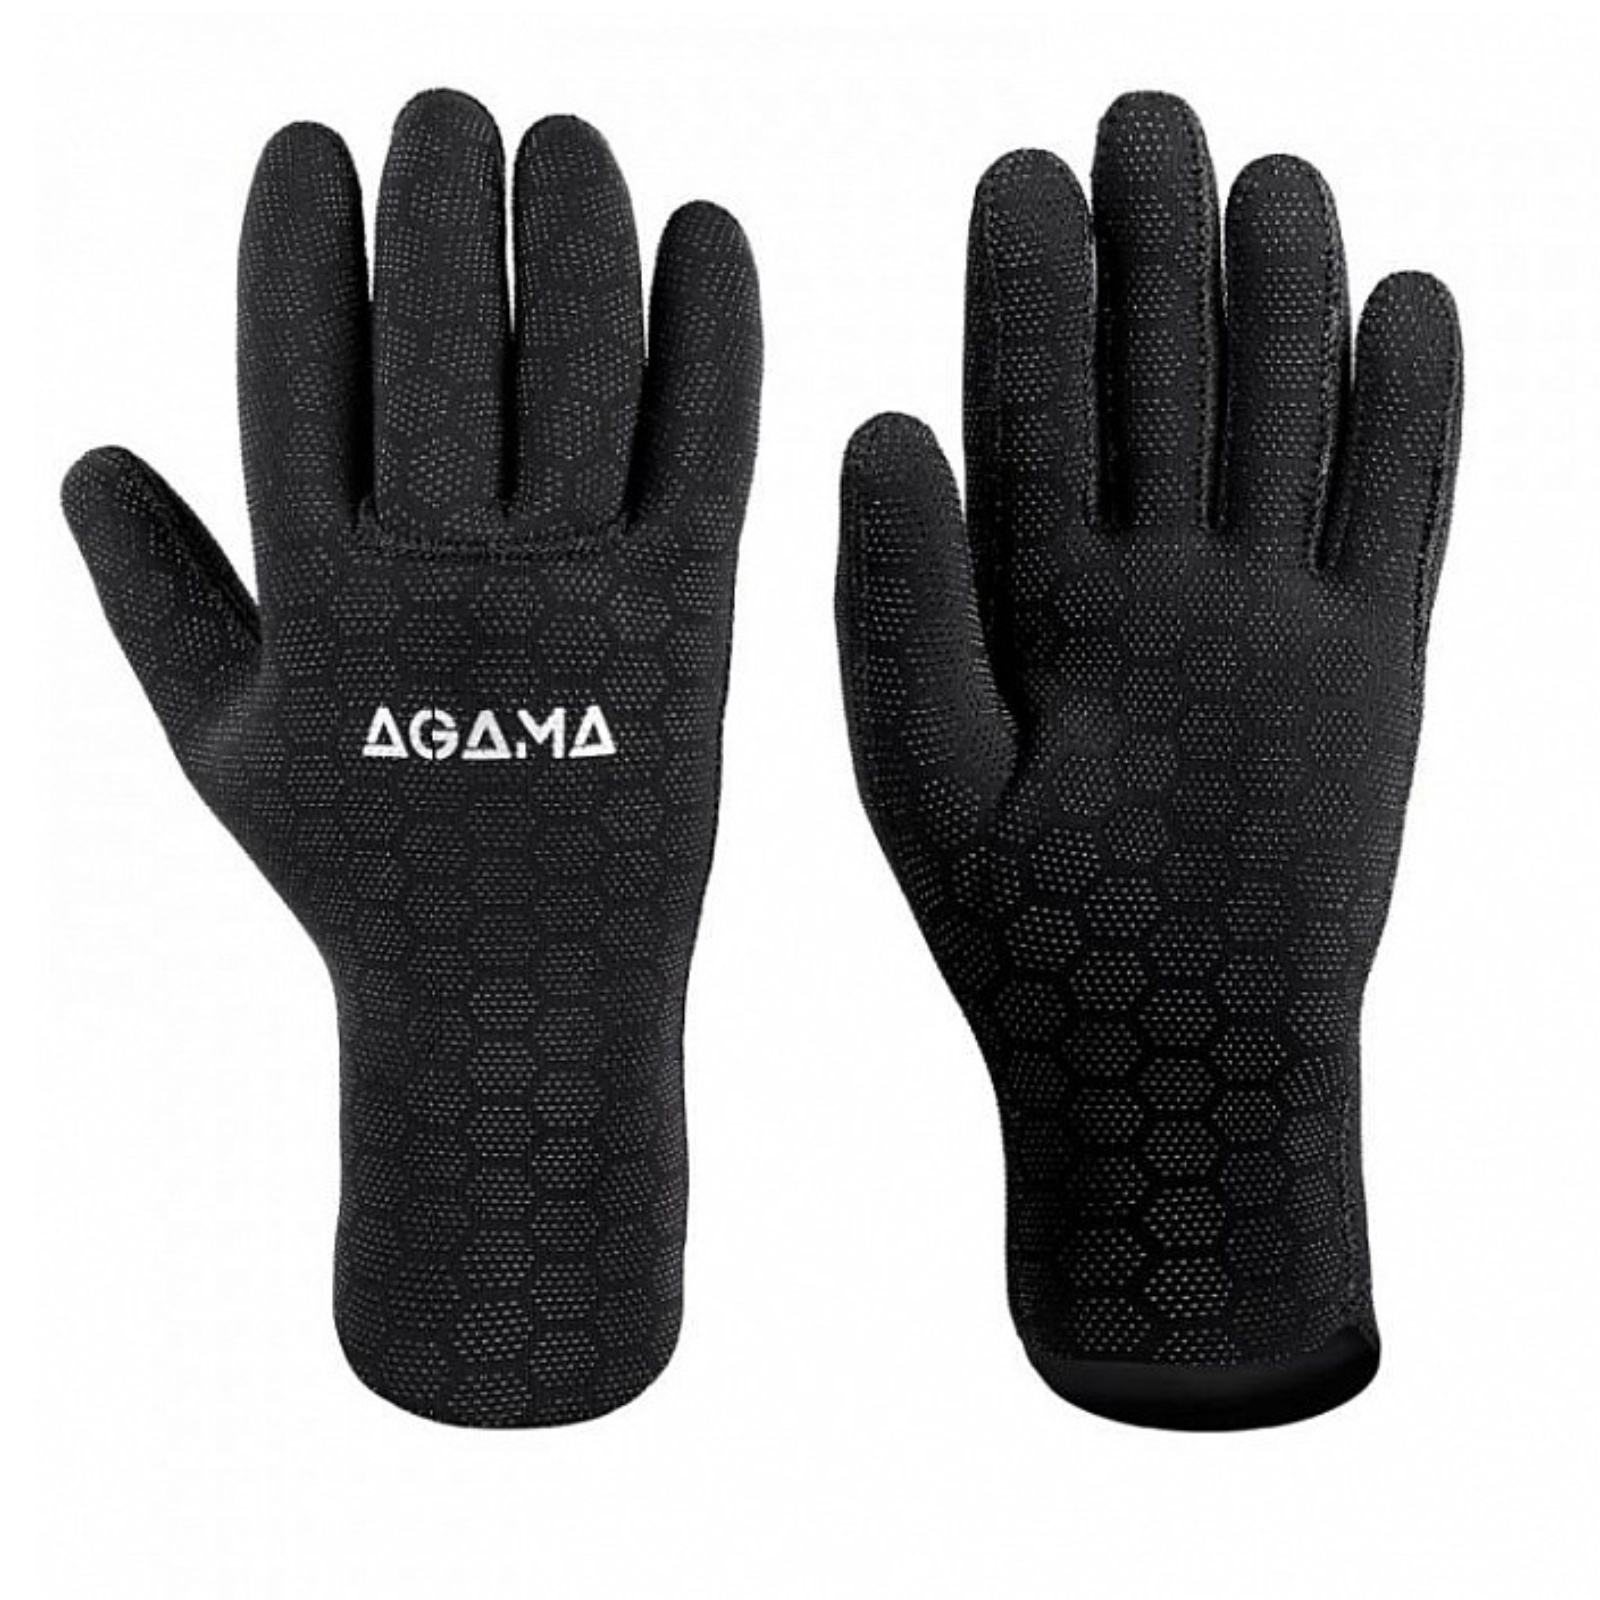 Neoprenové rukavice AGAMA Ultrastretch 3,5 mm - vel. L